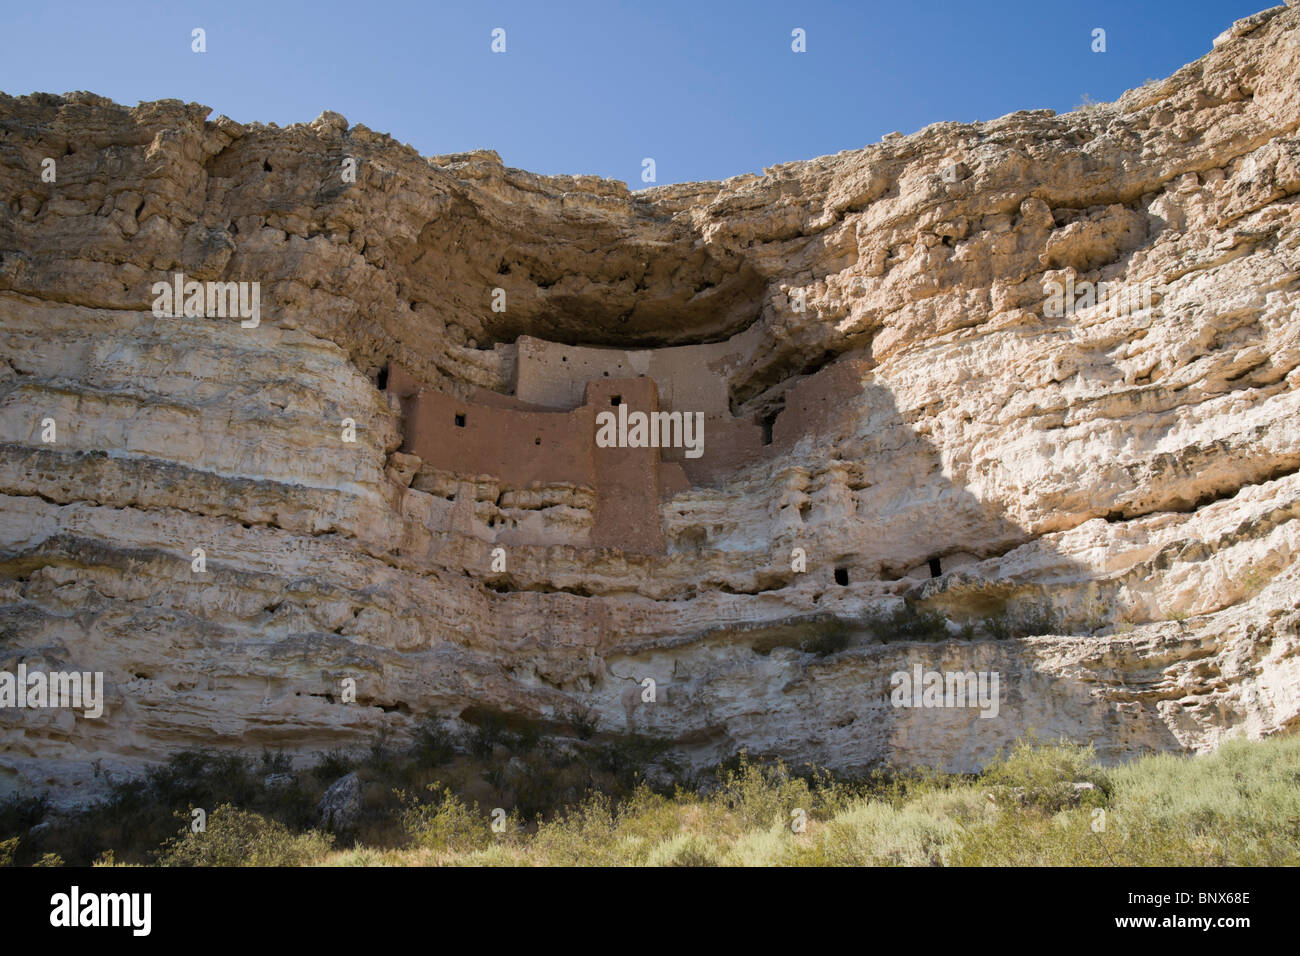 Verde Valley, Arizona, Stati Uniti d'America - Castello di Montezuma Parco nazionale storico indiani Sinagua cliff abitazione Foto Stock